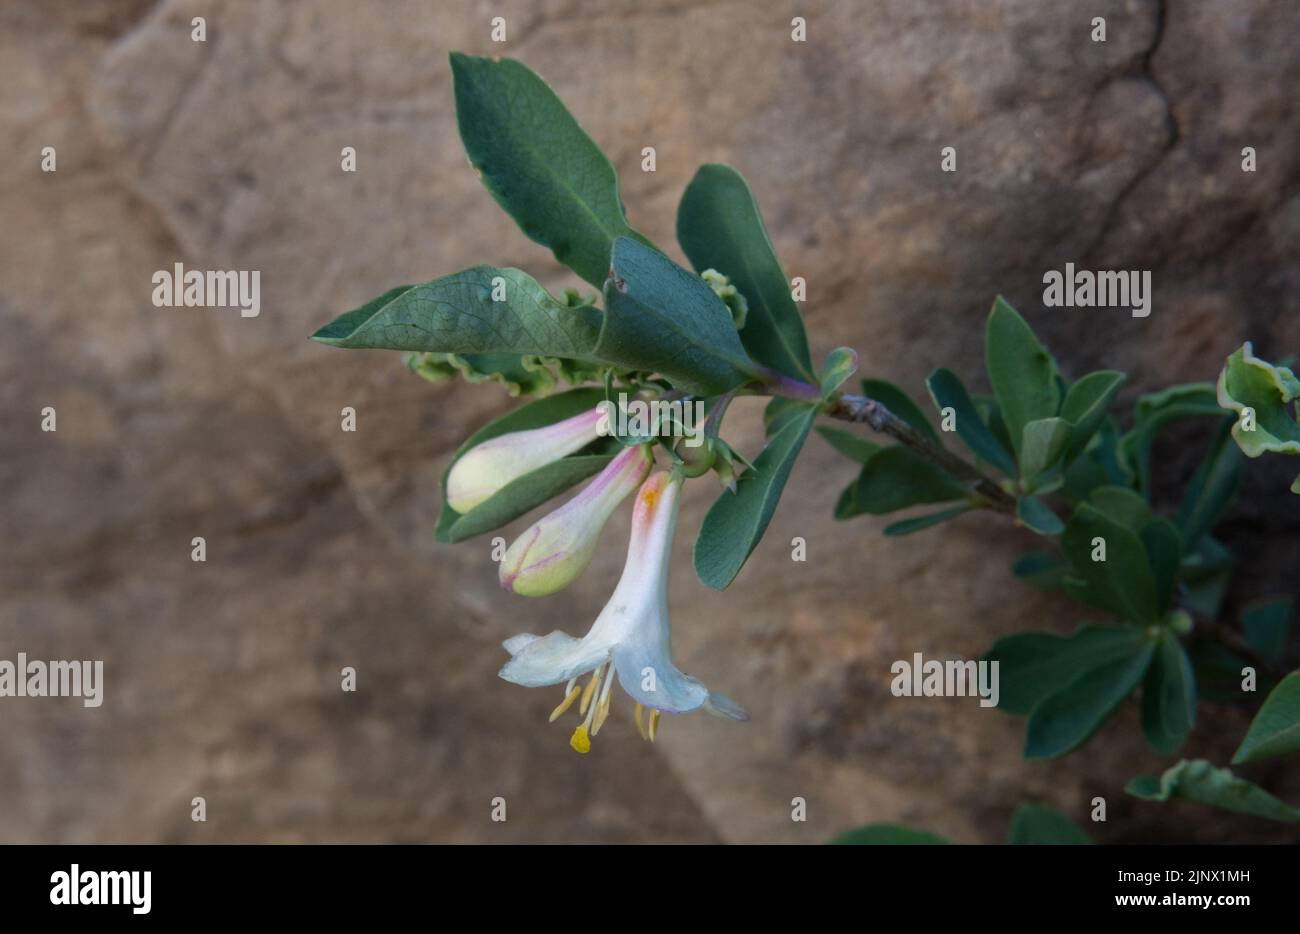 Primo piano di una ventosa di miele dei Pirenei, Lonicera pirenaica, un fiore con setti bianchi e stami gialli Foto Stock